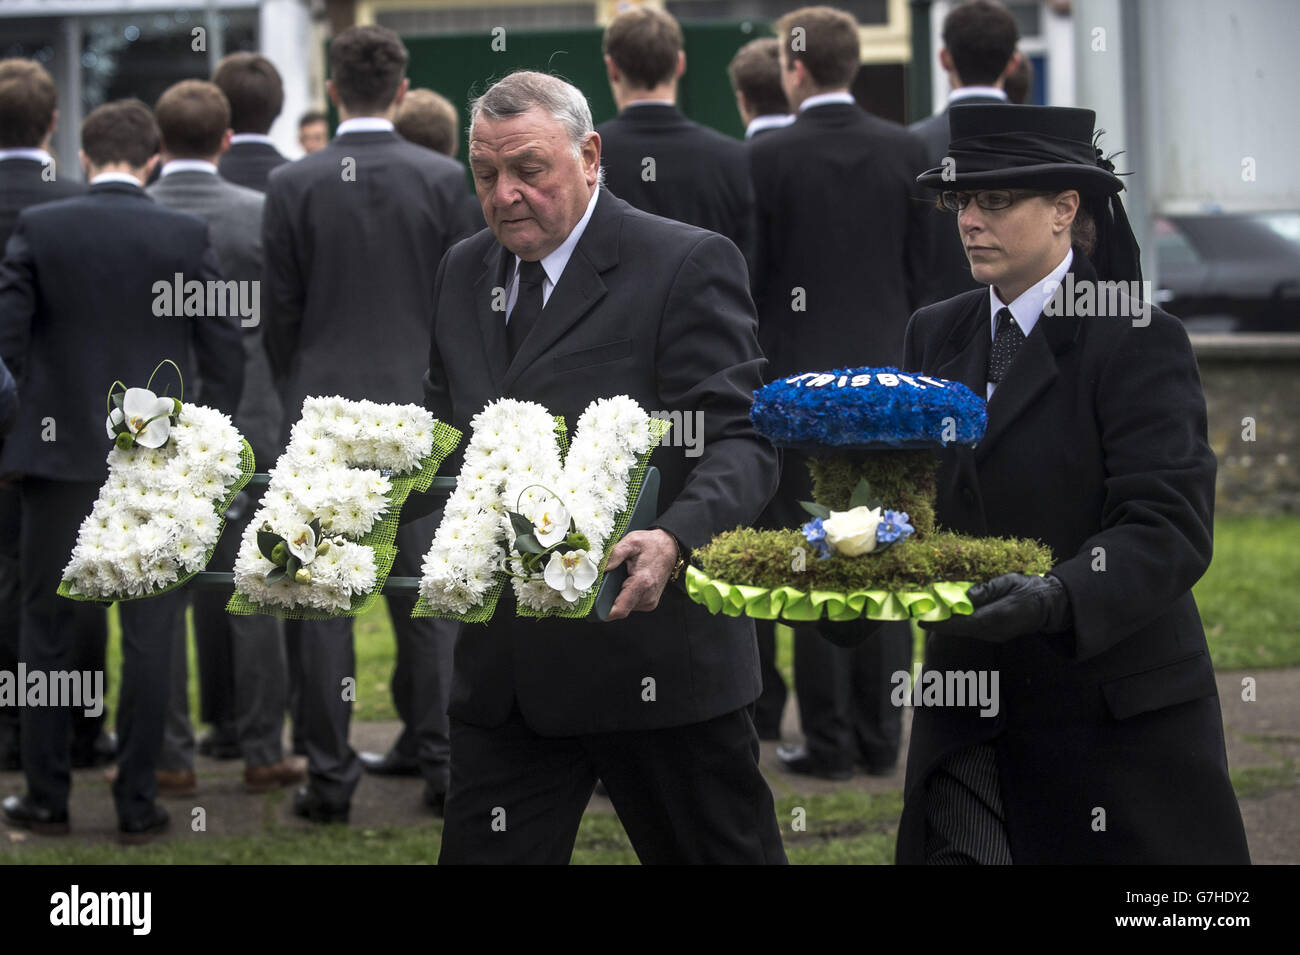 Des fleurs pour Ben Pocock, l'étudiant de l'université qui était à bord du vol MH17 de Malaysia Airlines lorsqu'il s'est écrasé en Ukraine, sont transportées dans l'église Saint-Jean-Baptiste, Keynsham, Bristol, où ses funérailles ont eu lieu. Banque D'Images